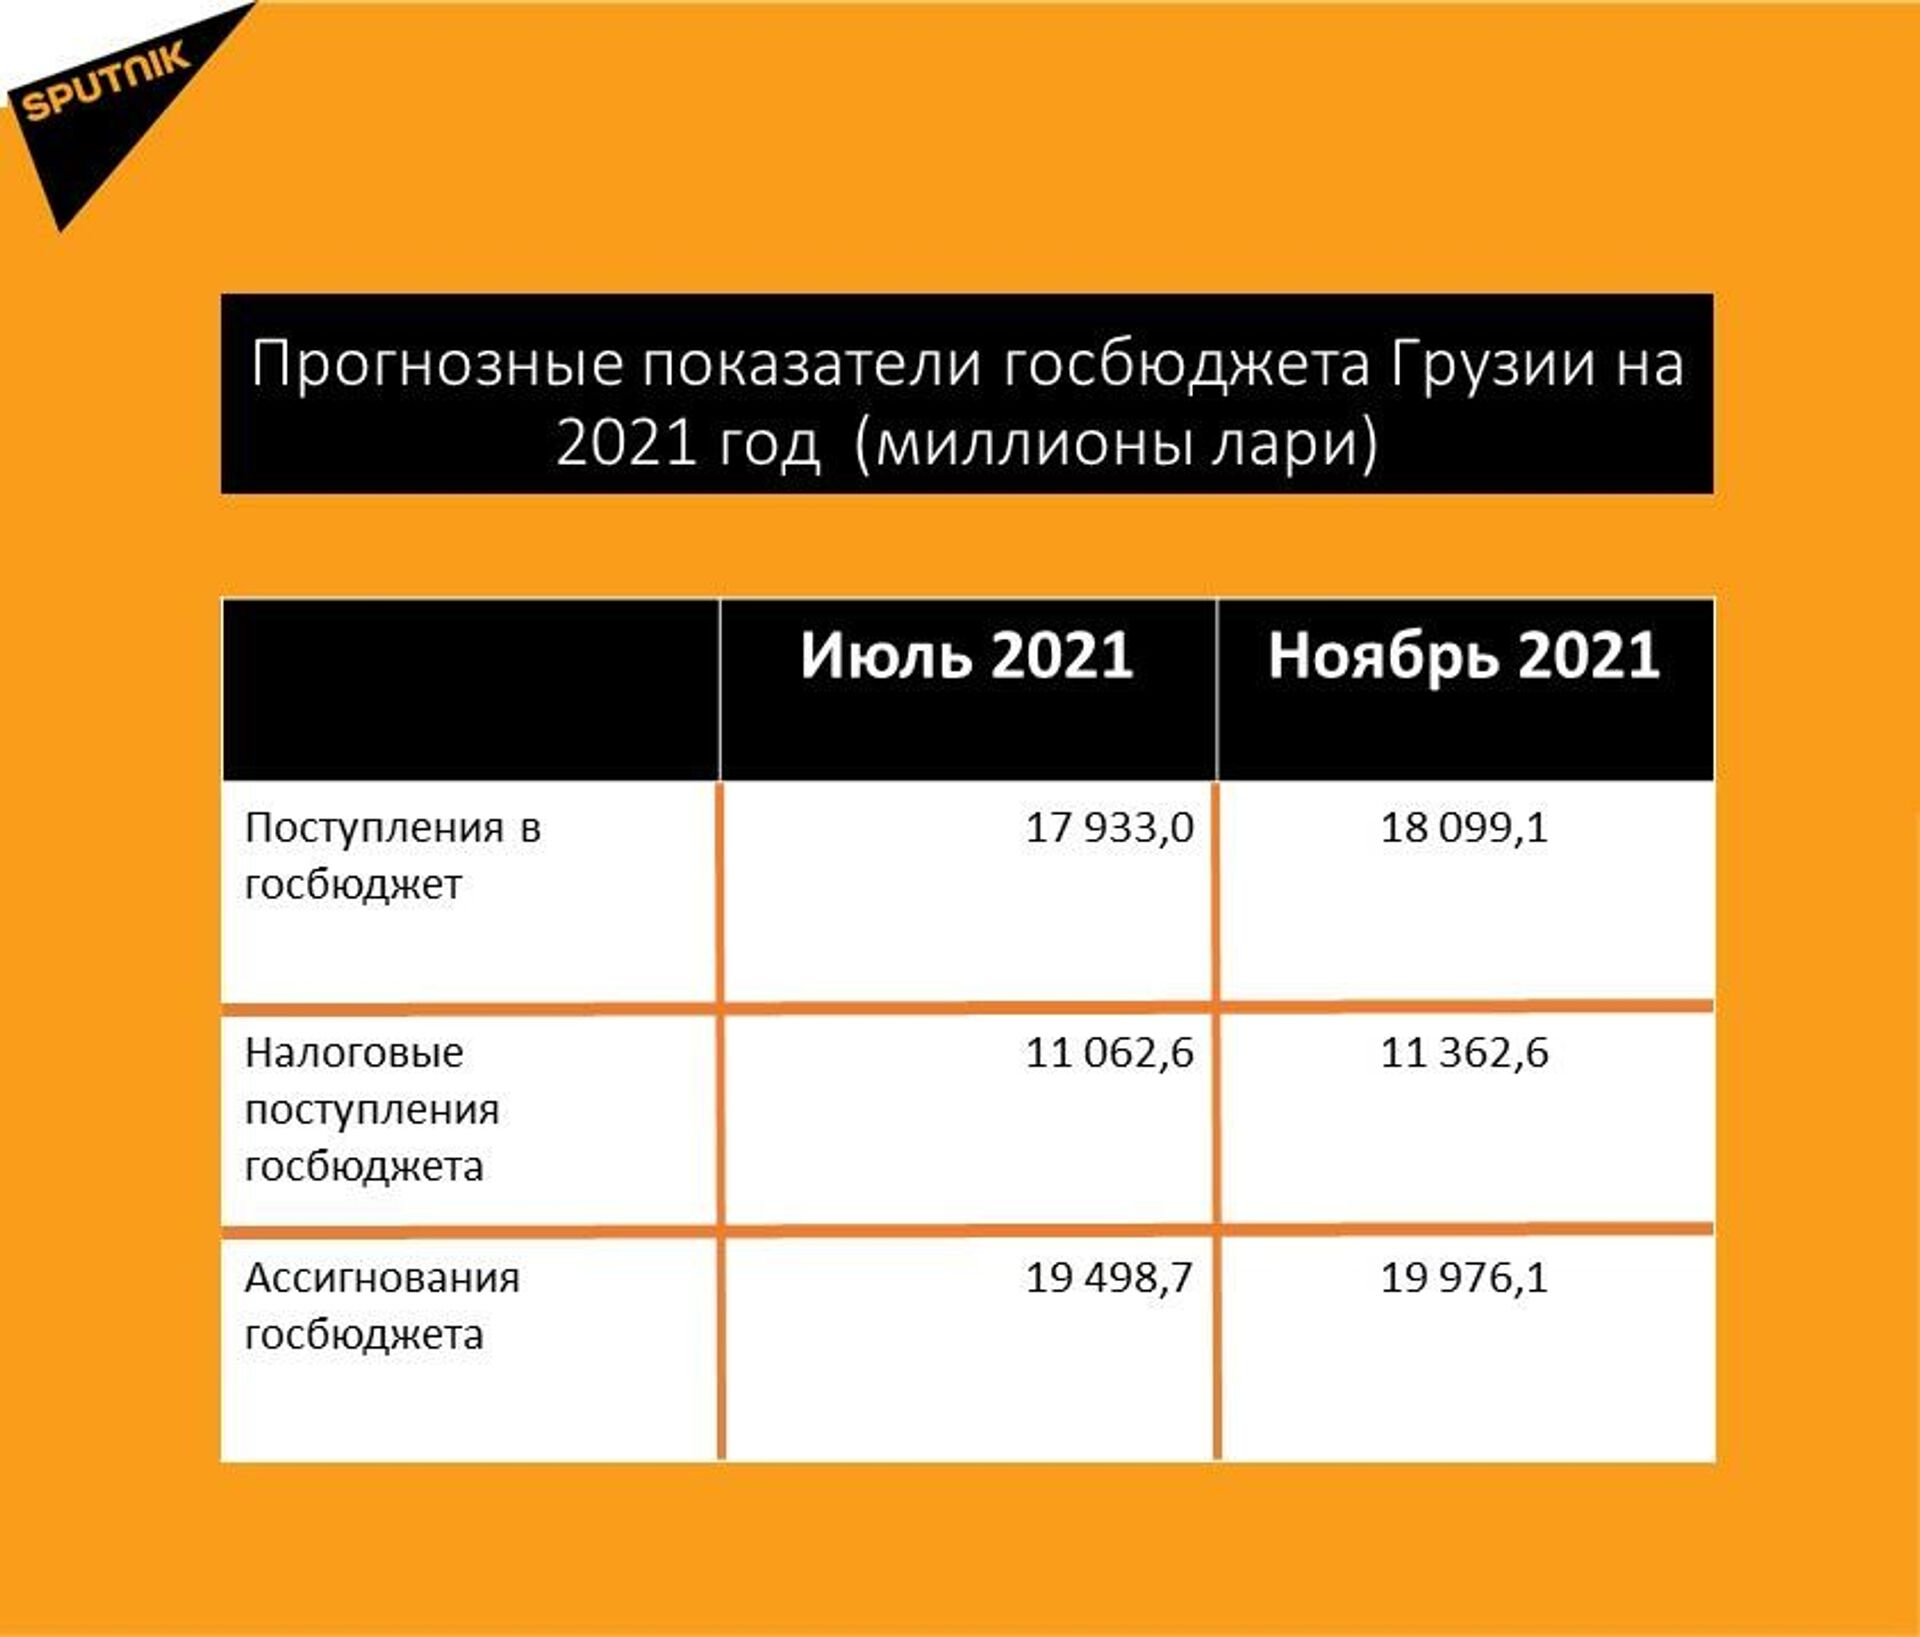 Прогнозные показатели госбюджета Грузии на 2021 год после изменений - Sputnik Грузия, 1920, 10.01.2022